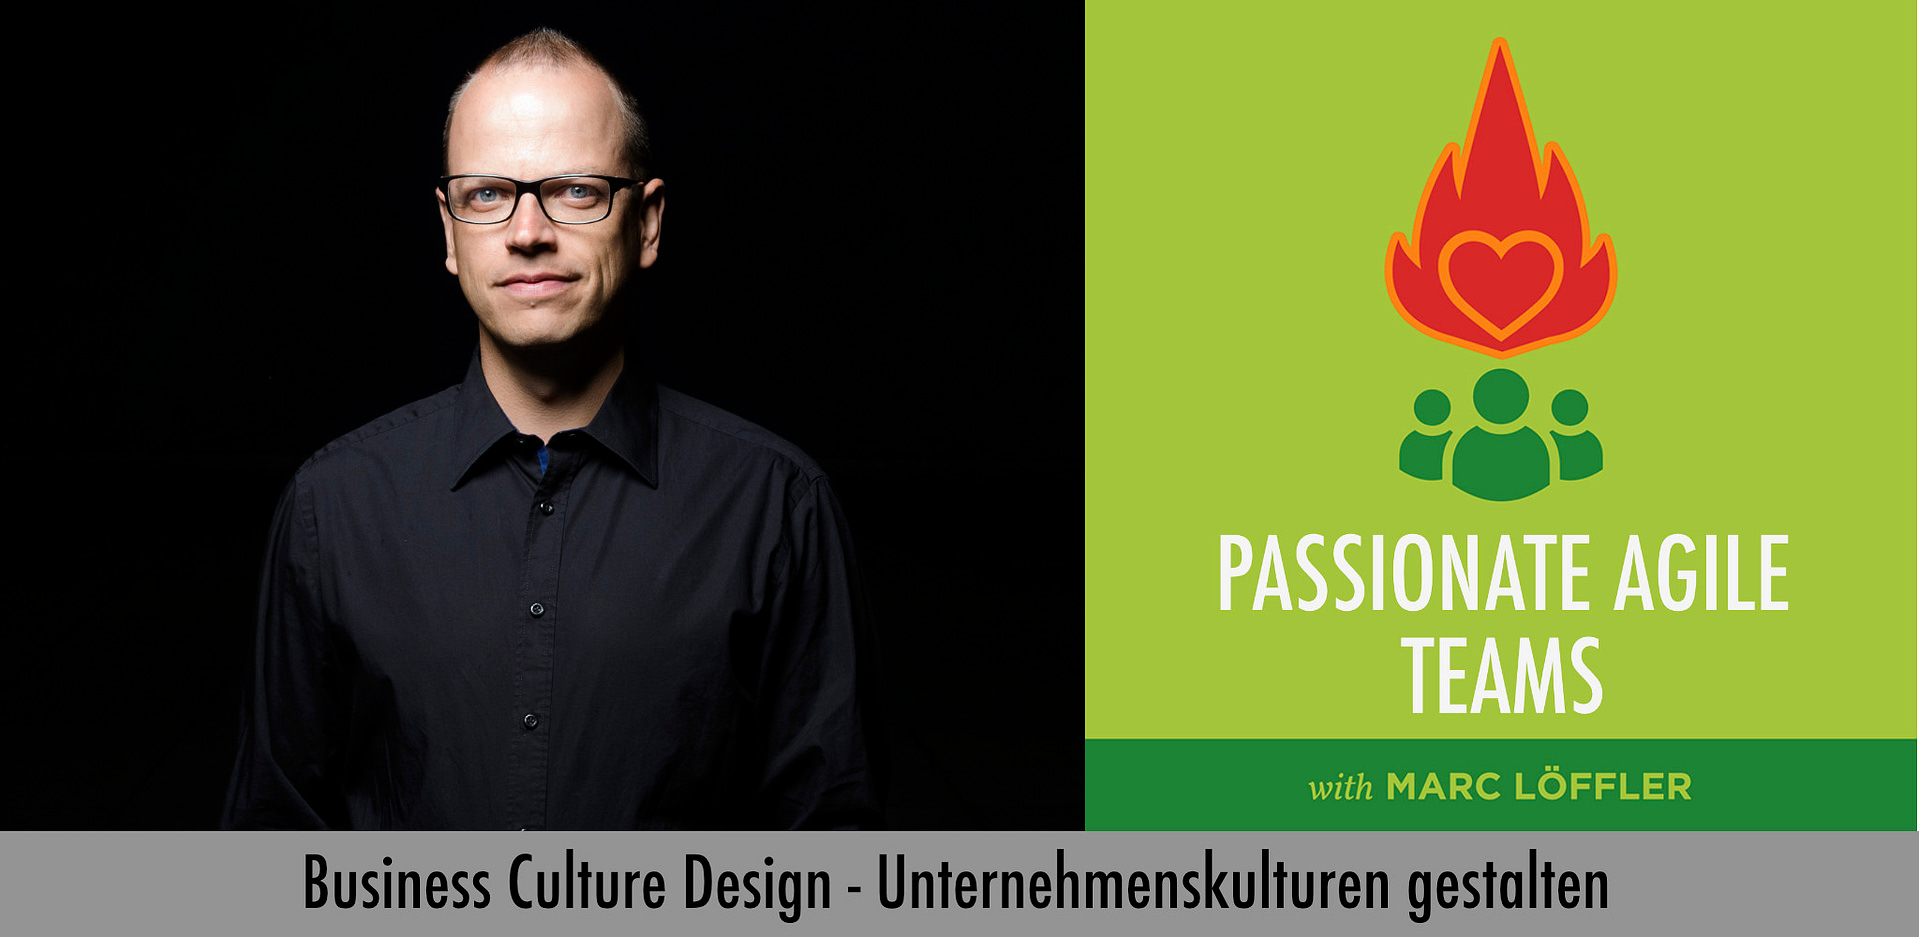 Foto von Scrum Master Marc Löffler und Podcast-Titel: Business Culture Design, Unternehmenskulturen gestalten